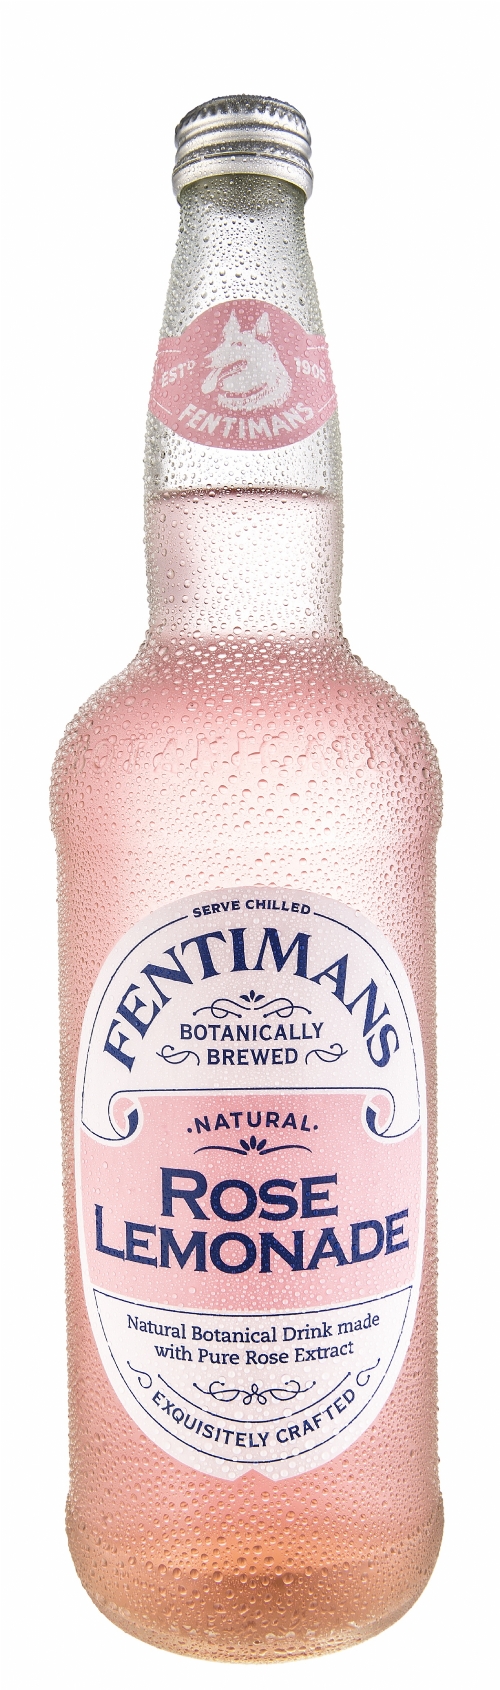 FENTIMANS Rose Lemonade 750ml